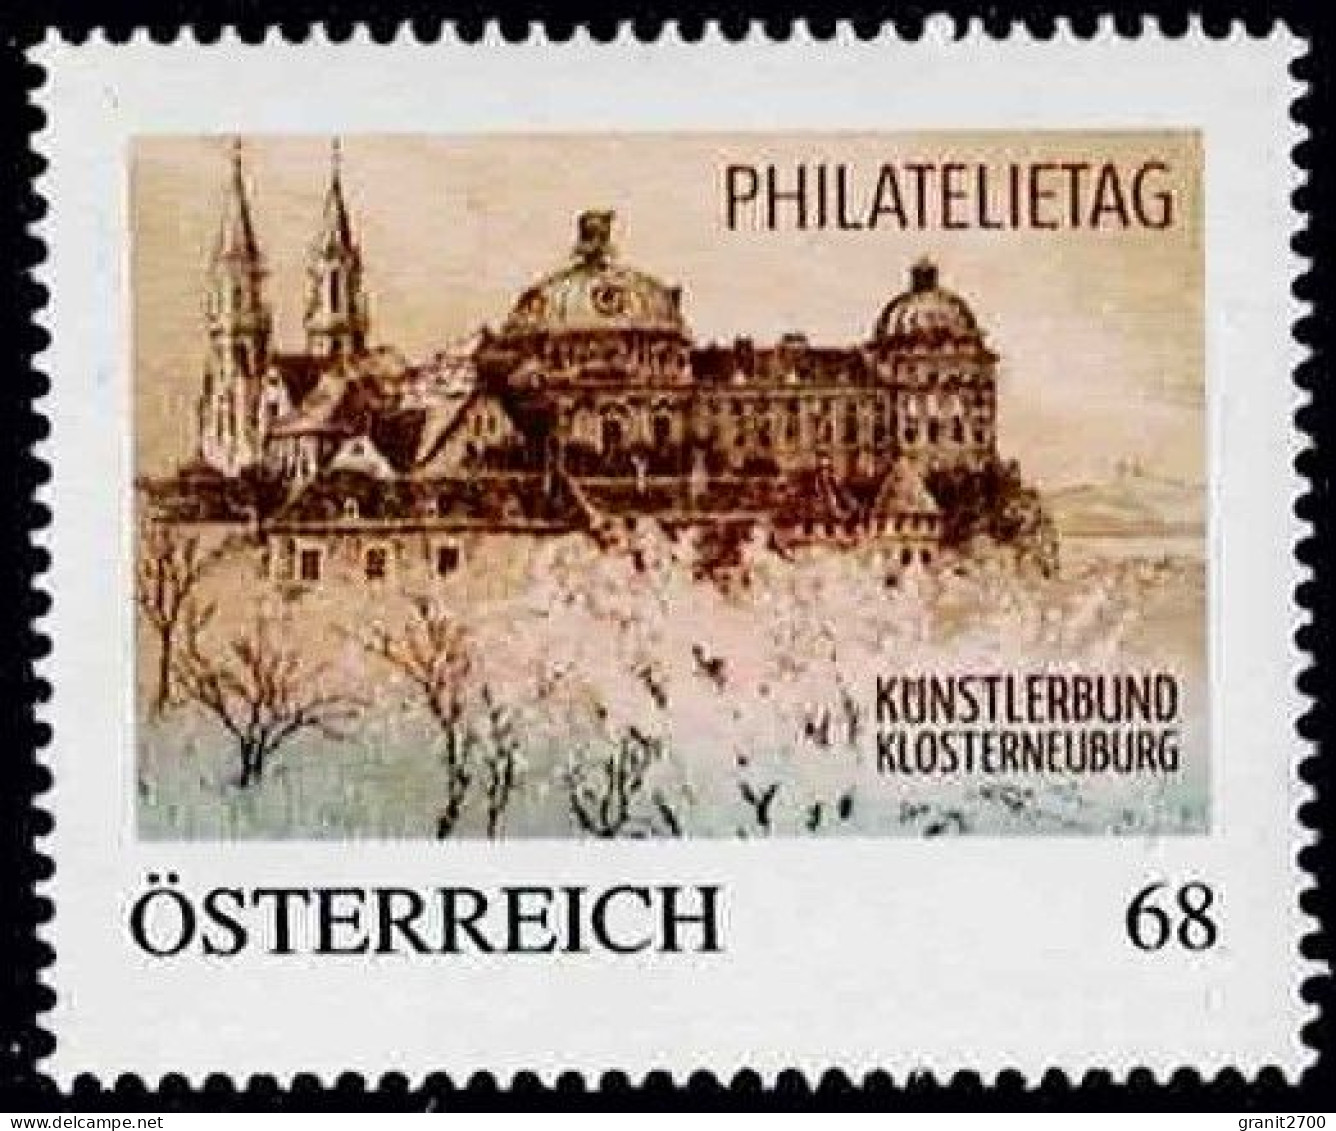 PM  Philatelietag Klosterneuburg  Ex Bogen Nr. 8115053 Vom 13.8.2015  Postfrisch - Personalisierte Briefmarken